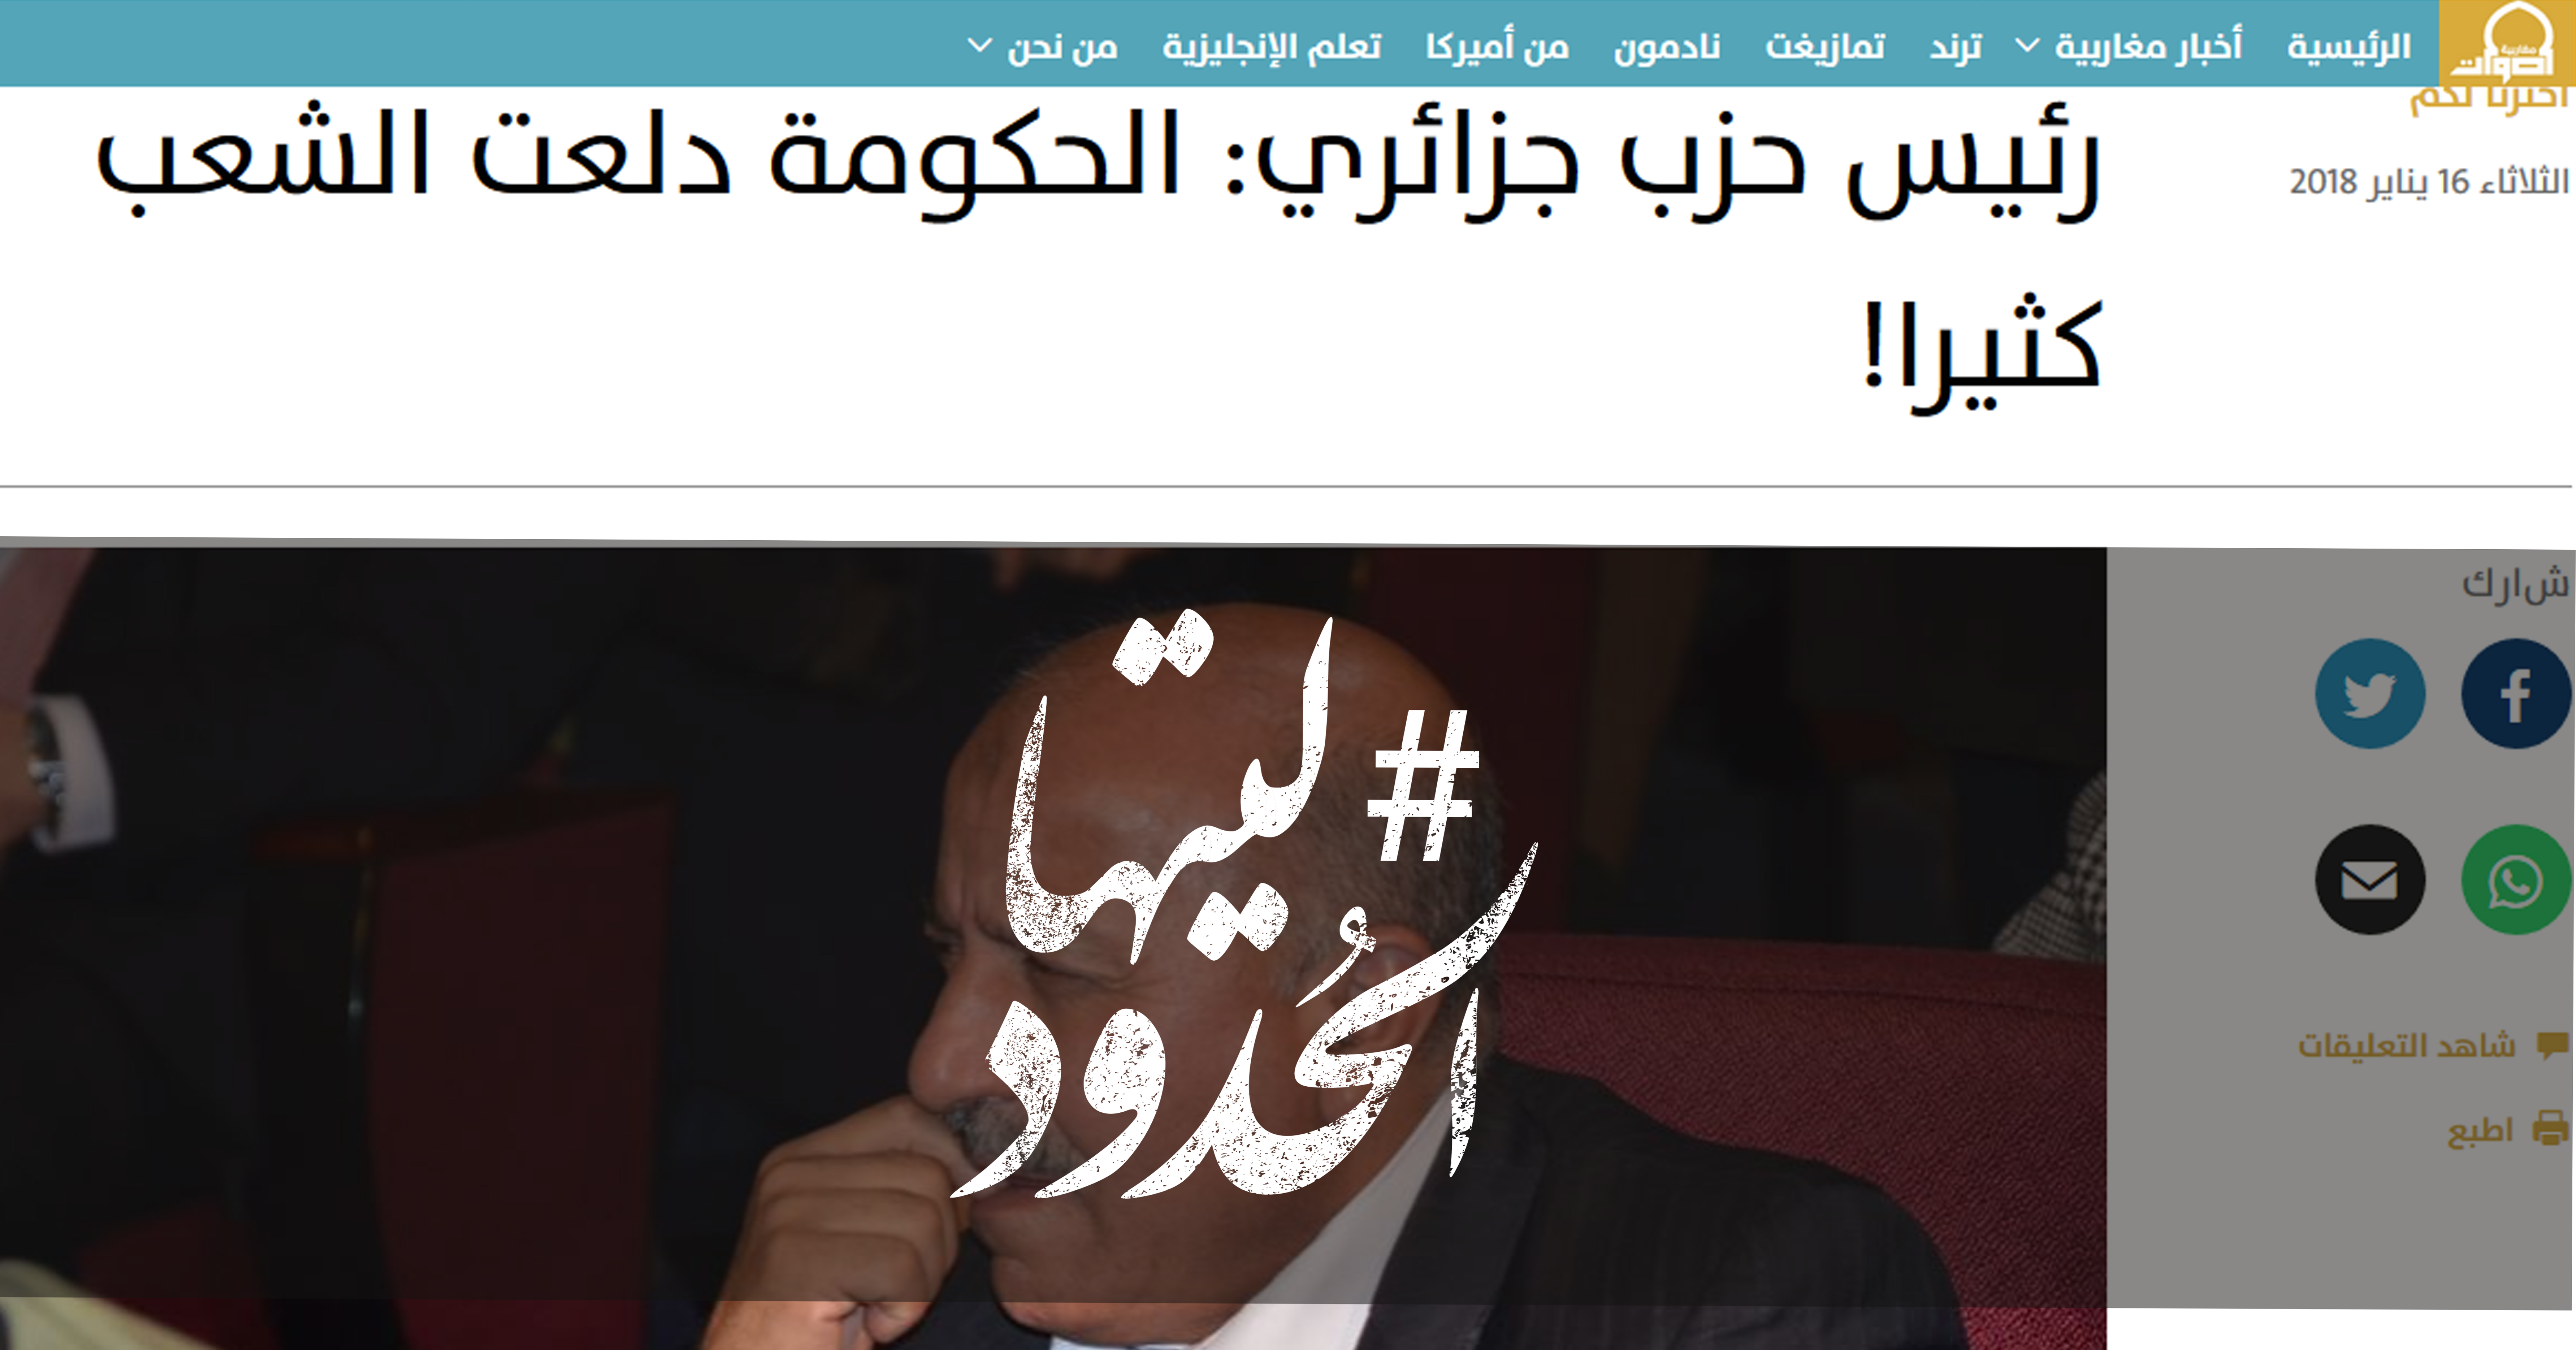 صورة رئيس حزب جزائري: الحكومة دلعت الشعب كثيرا!